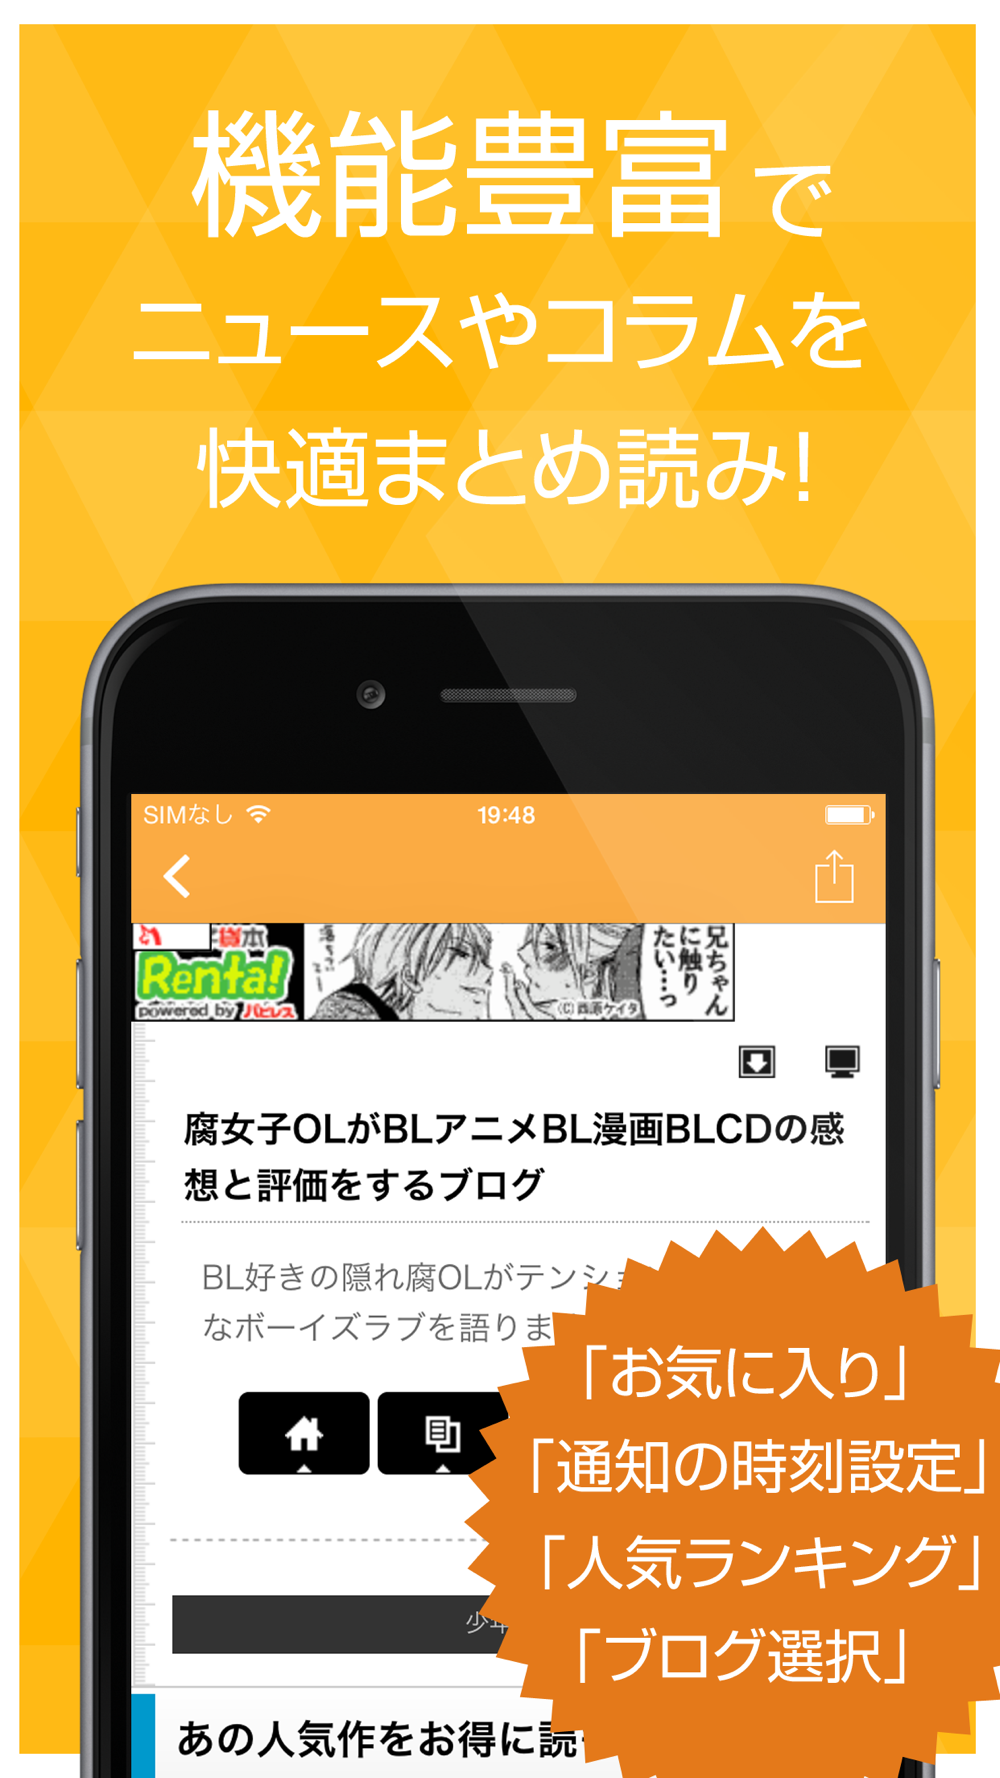 腐女子まとめ速報 腐女子が好きな人気マンガやアニメをまとめてお届け Free Download App For Iphone Steprimo Com